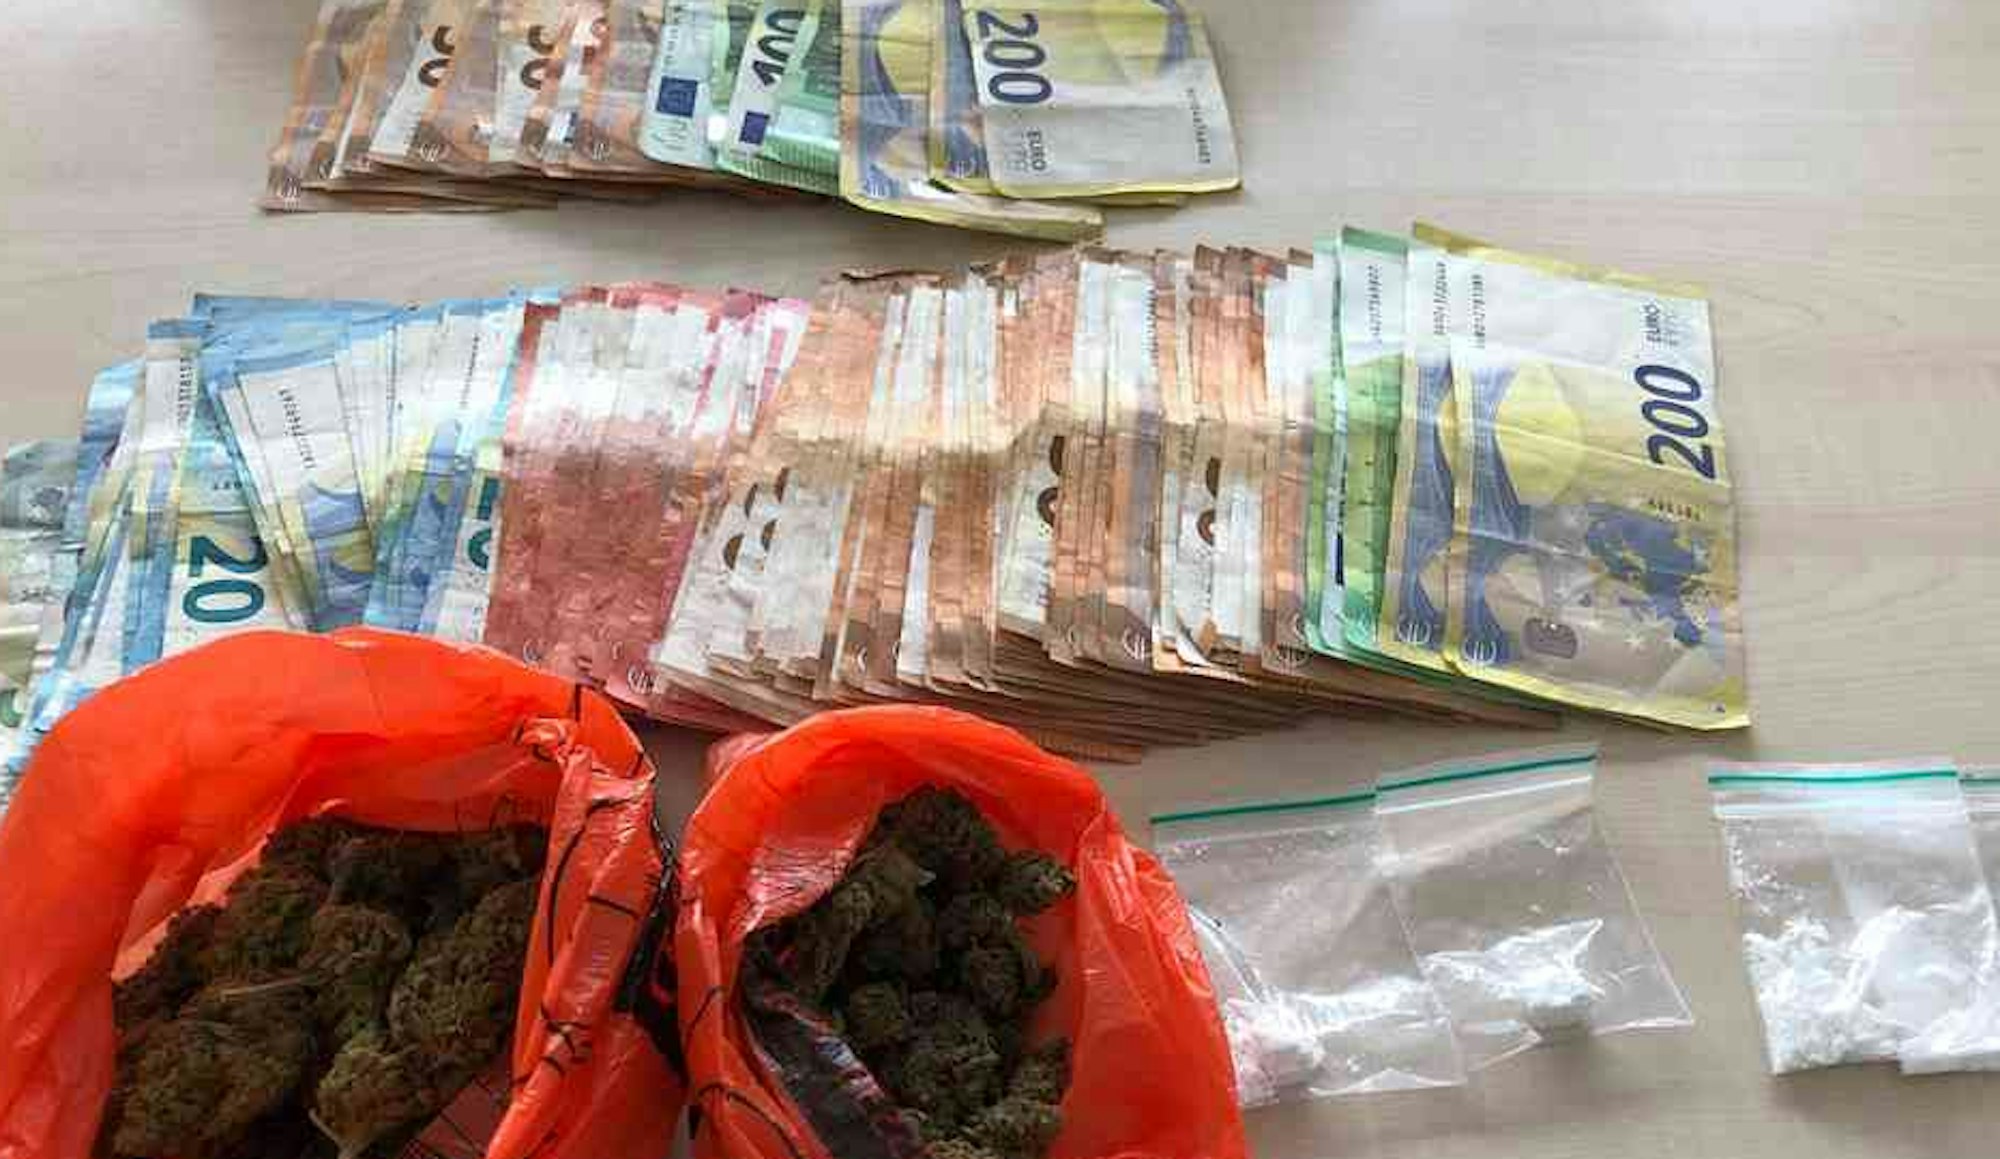 Drogengeld, Marihuana und Kokain liegen auf einem Tisch